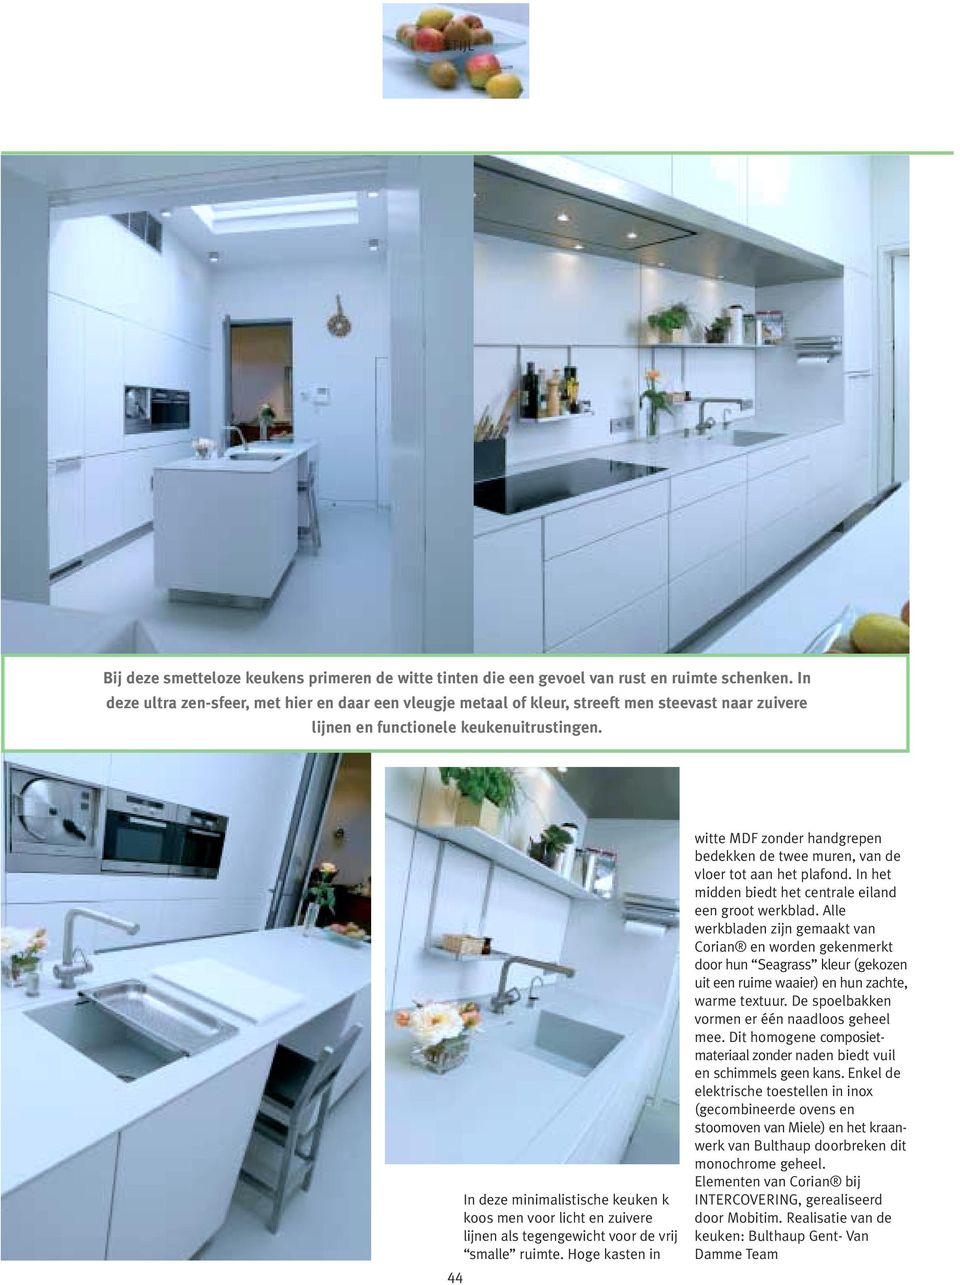 In deze minimalistische keuken k koos men voor licht en zuivere lijnen als tegengewicht voor de vrij smalle ruimte.